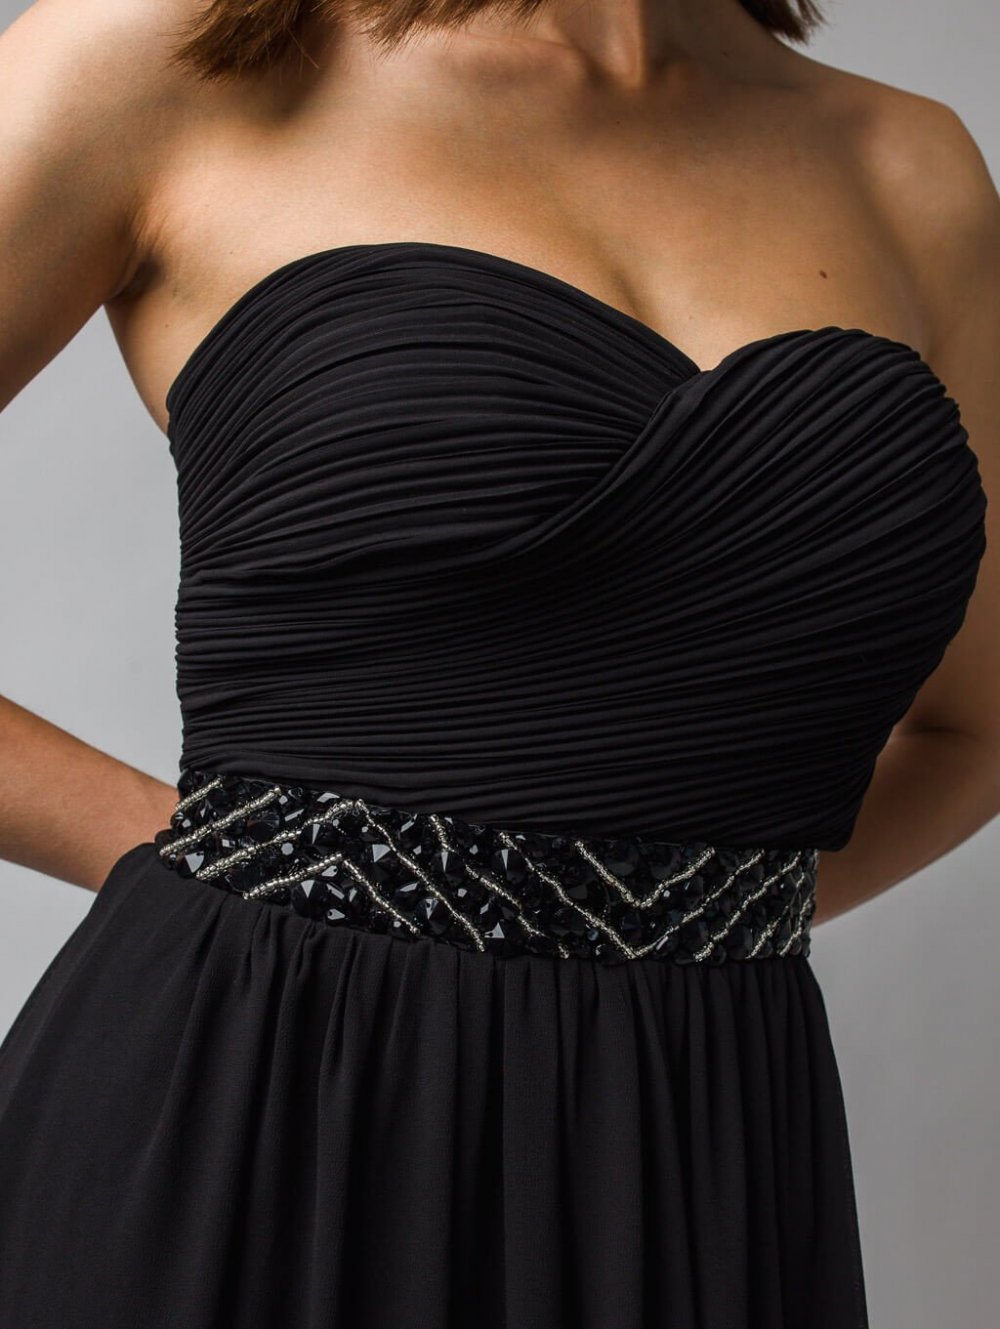 Čierne dlhé spoločenské šaty s odhalenými ramenami Leni